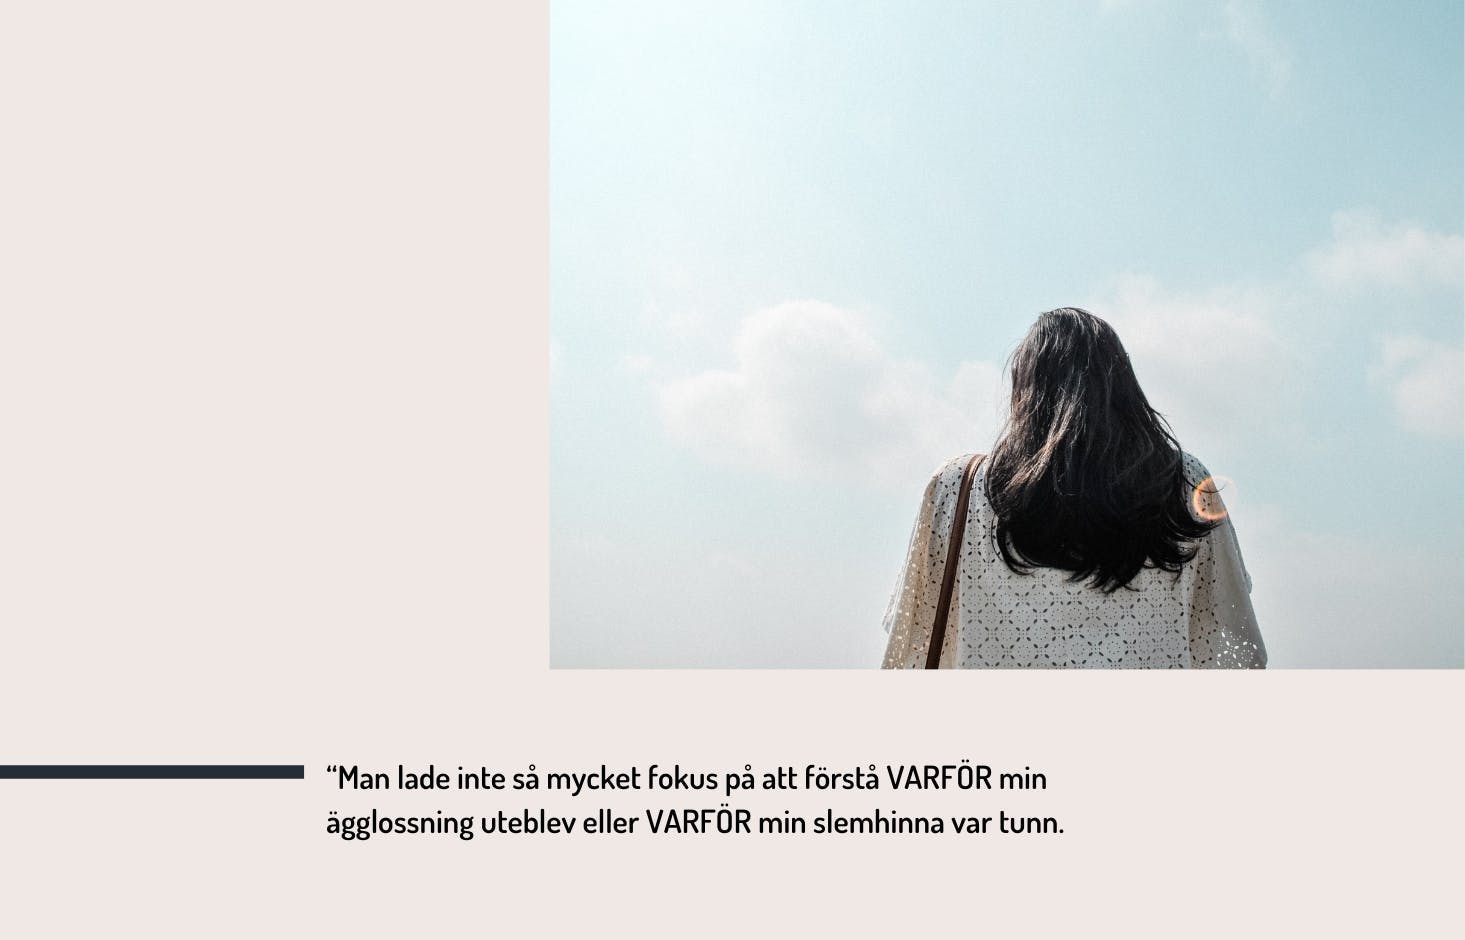 Photo of woman from behind, a blue sky, and the text "Man lade inte så mycket fokus på att förstå varför min ägglossning uteblev eller varför min slemhinna var tunn."